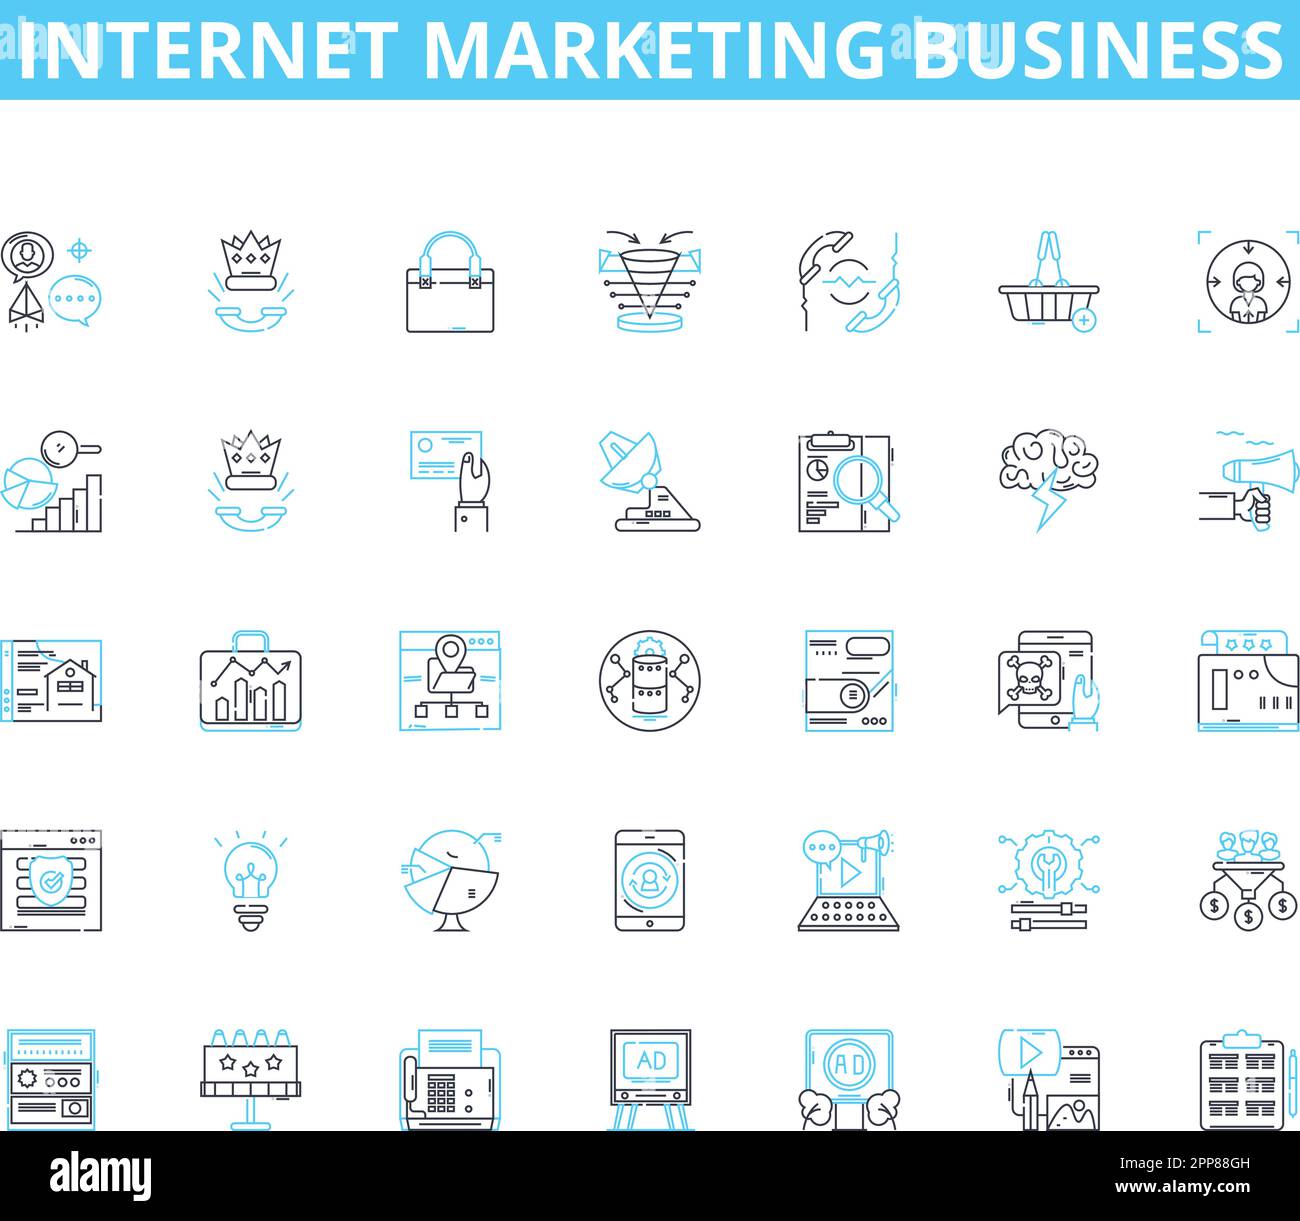 Internet marketing business lineare icone set. SEO, PPC, contenuti, analisi, social network, E-mail, vettore di linea mobile e segnali concettuali. Strategia,Branding Illustrazione Vettoriale